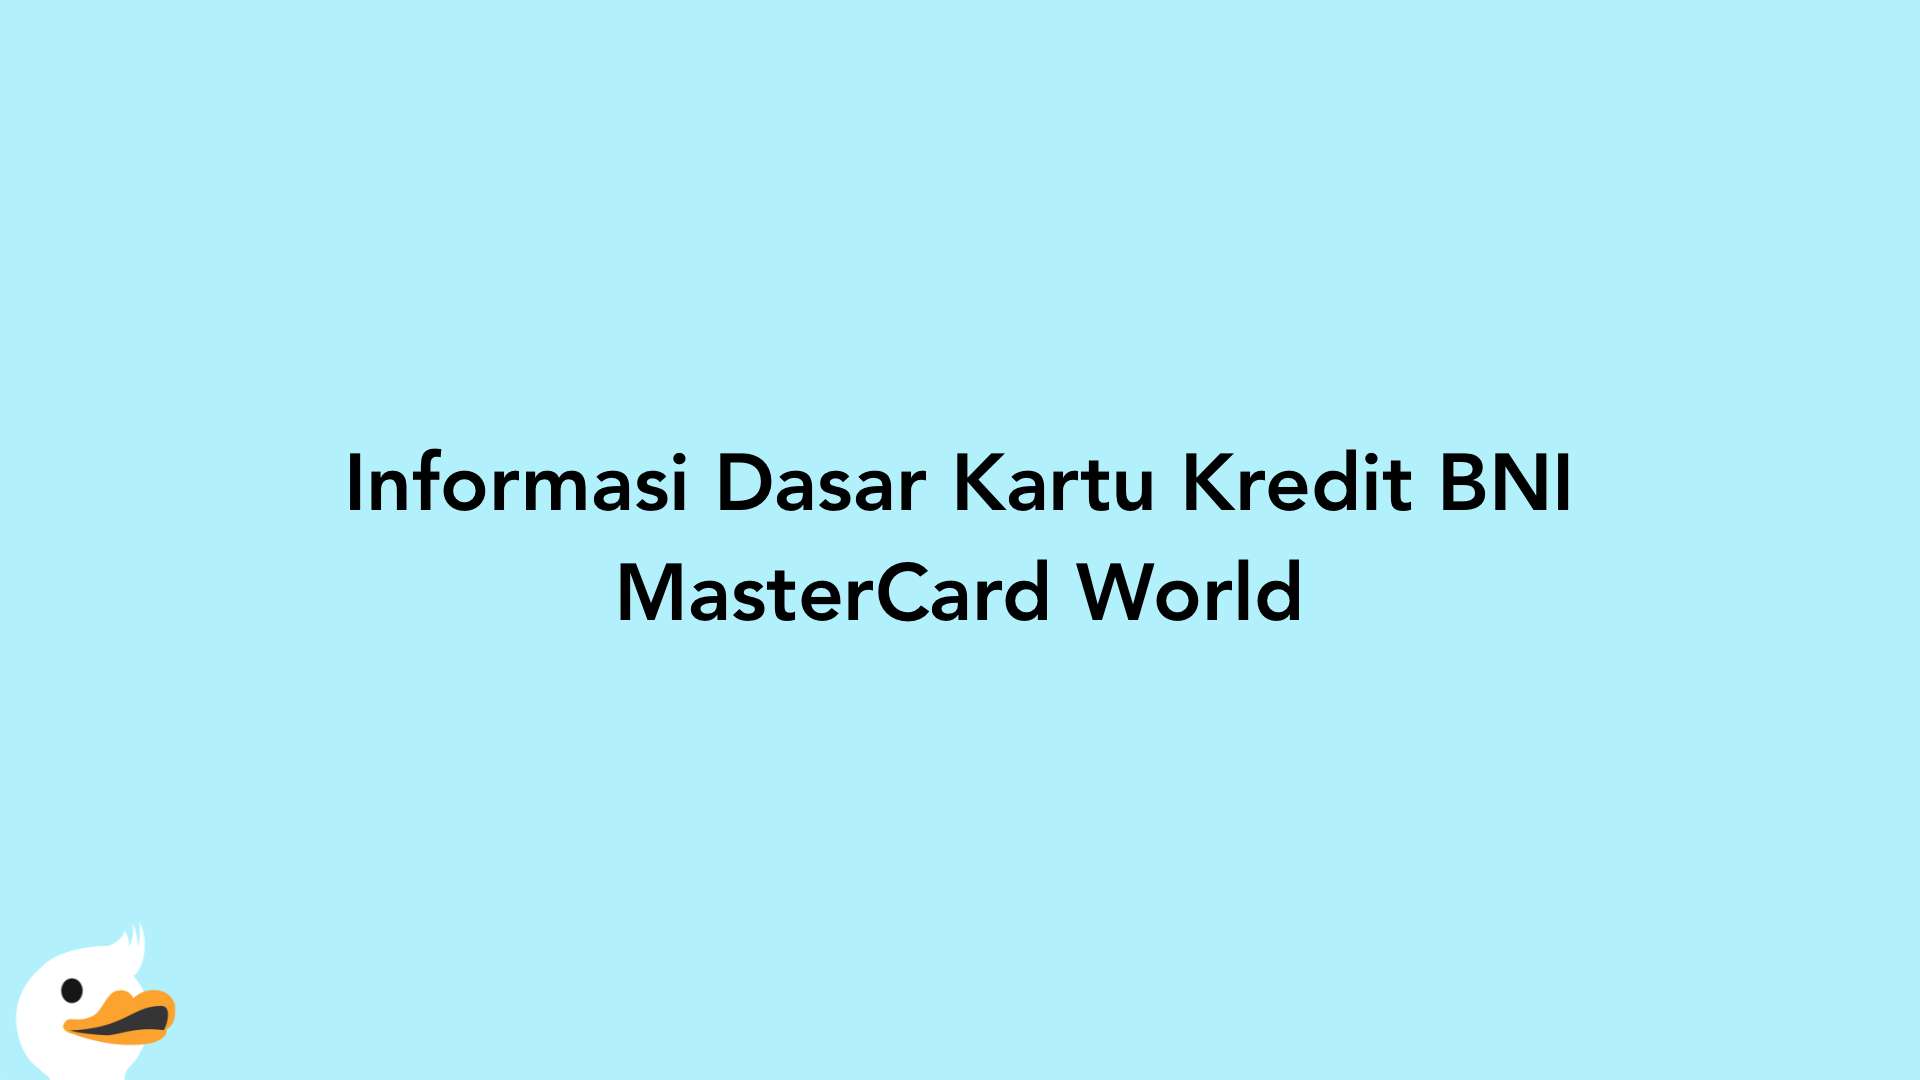 Informasi Dasar Kartu Kredit BNI MasterCard World